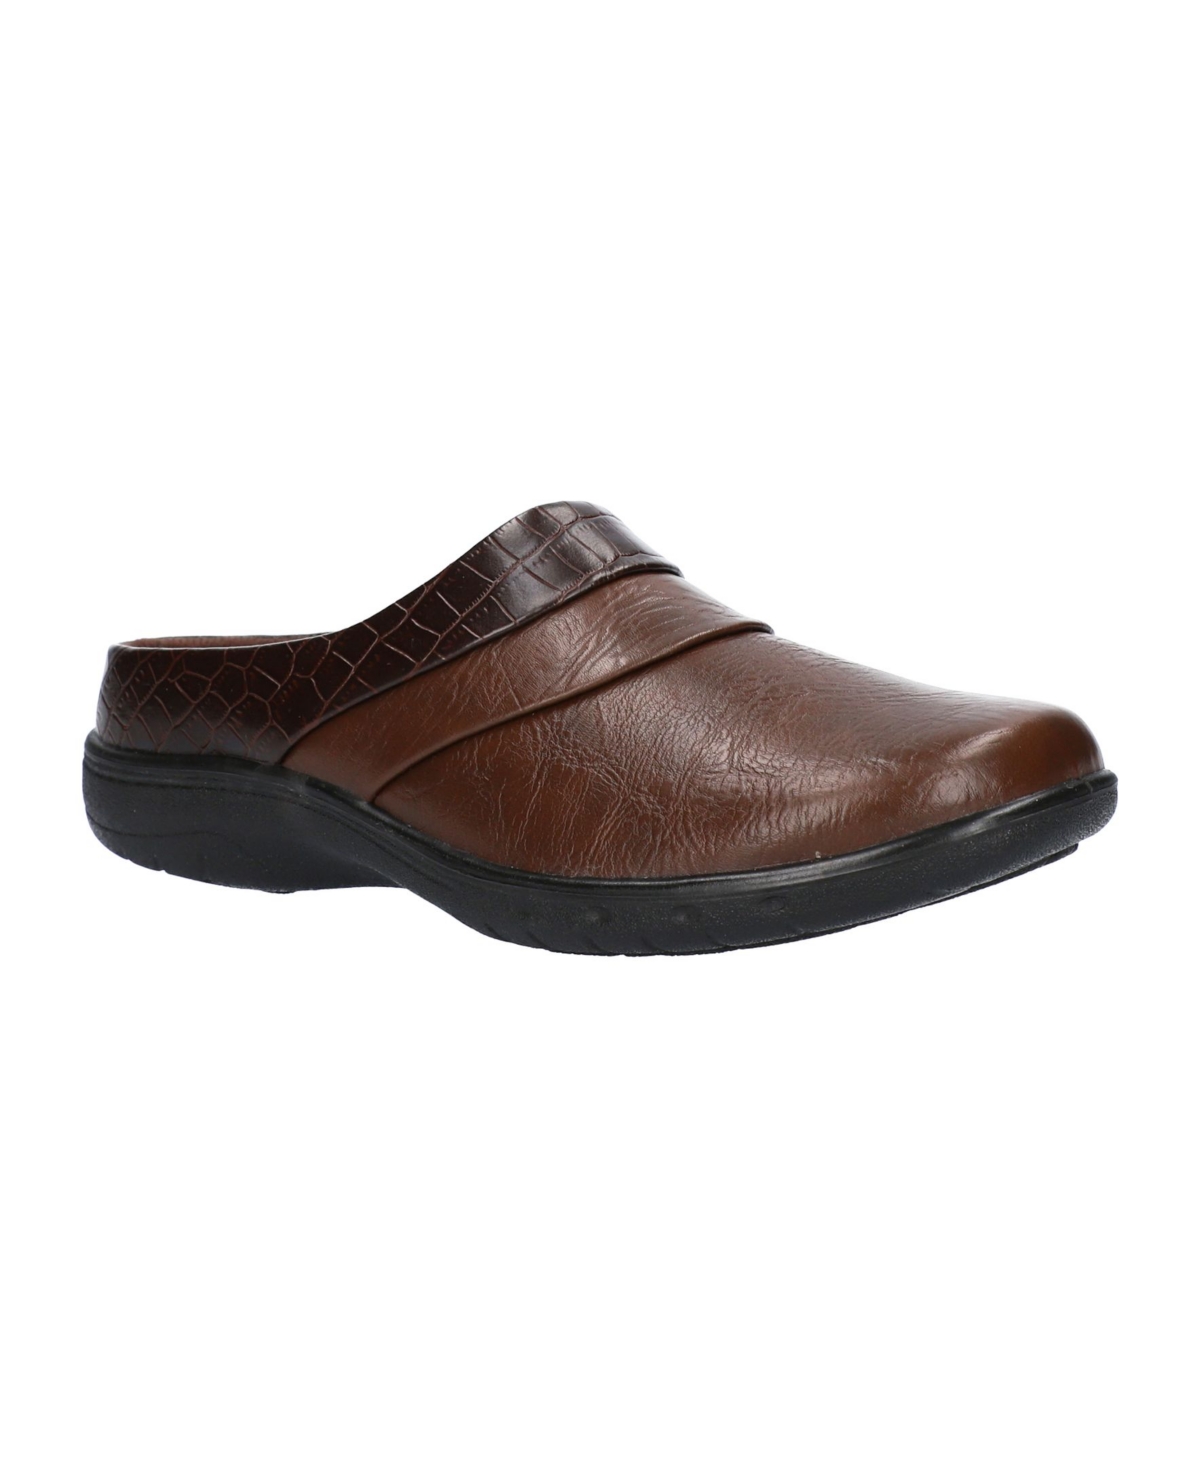 Swing Comfort Mules - Tan-brown Croco